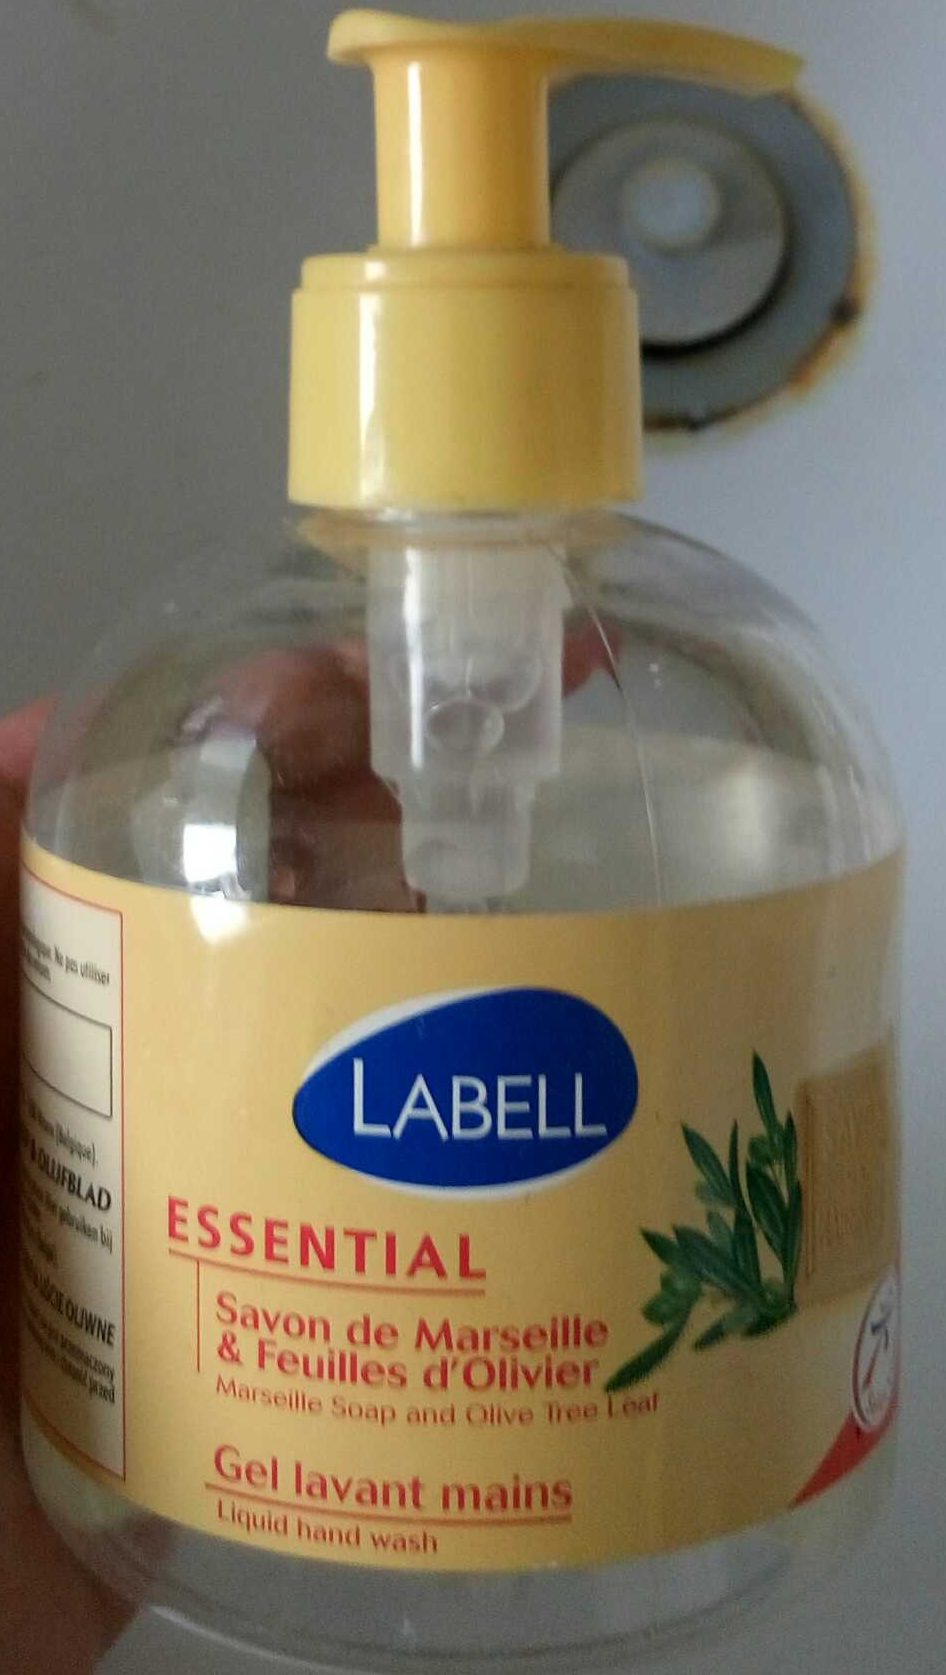 Essential Savon de Marseille & Feuilles d'Olivier Gel lavant mains - Product - fr